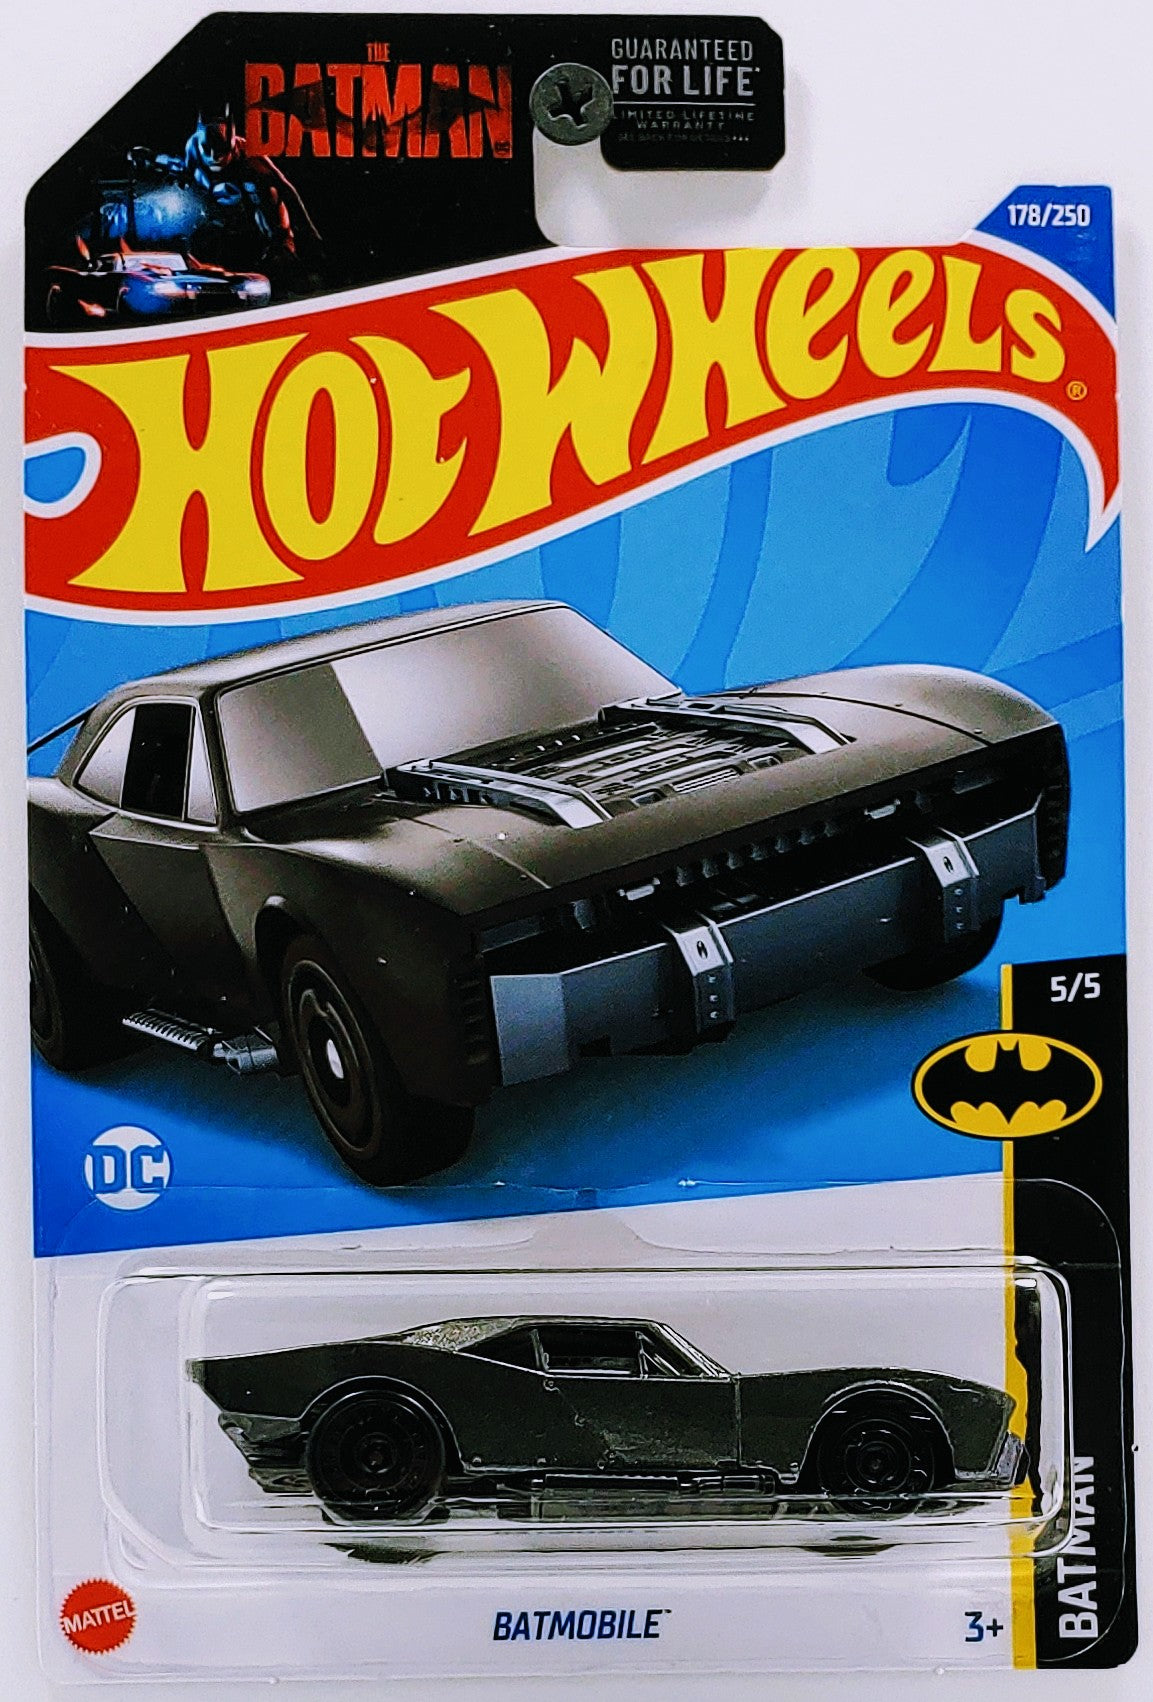 Hot Wheels 2022 - Collector # 178/250 - Batman 5/5 - Batmobile - Metallic Gray - Aero Disc - USA